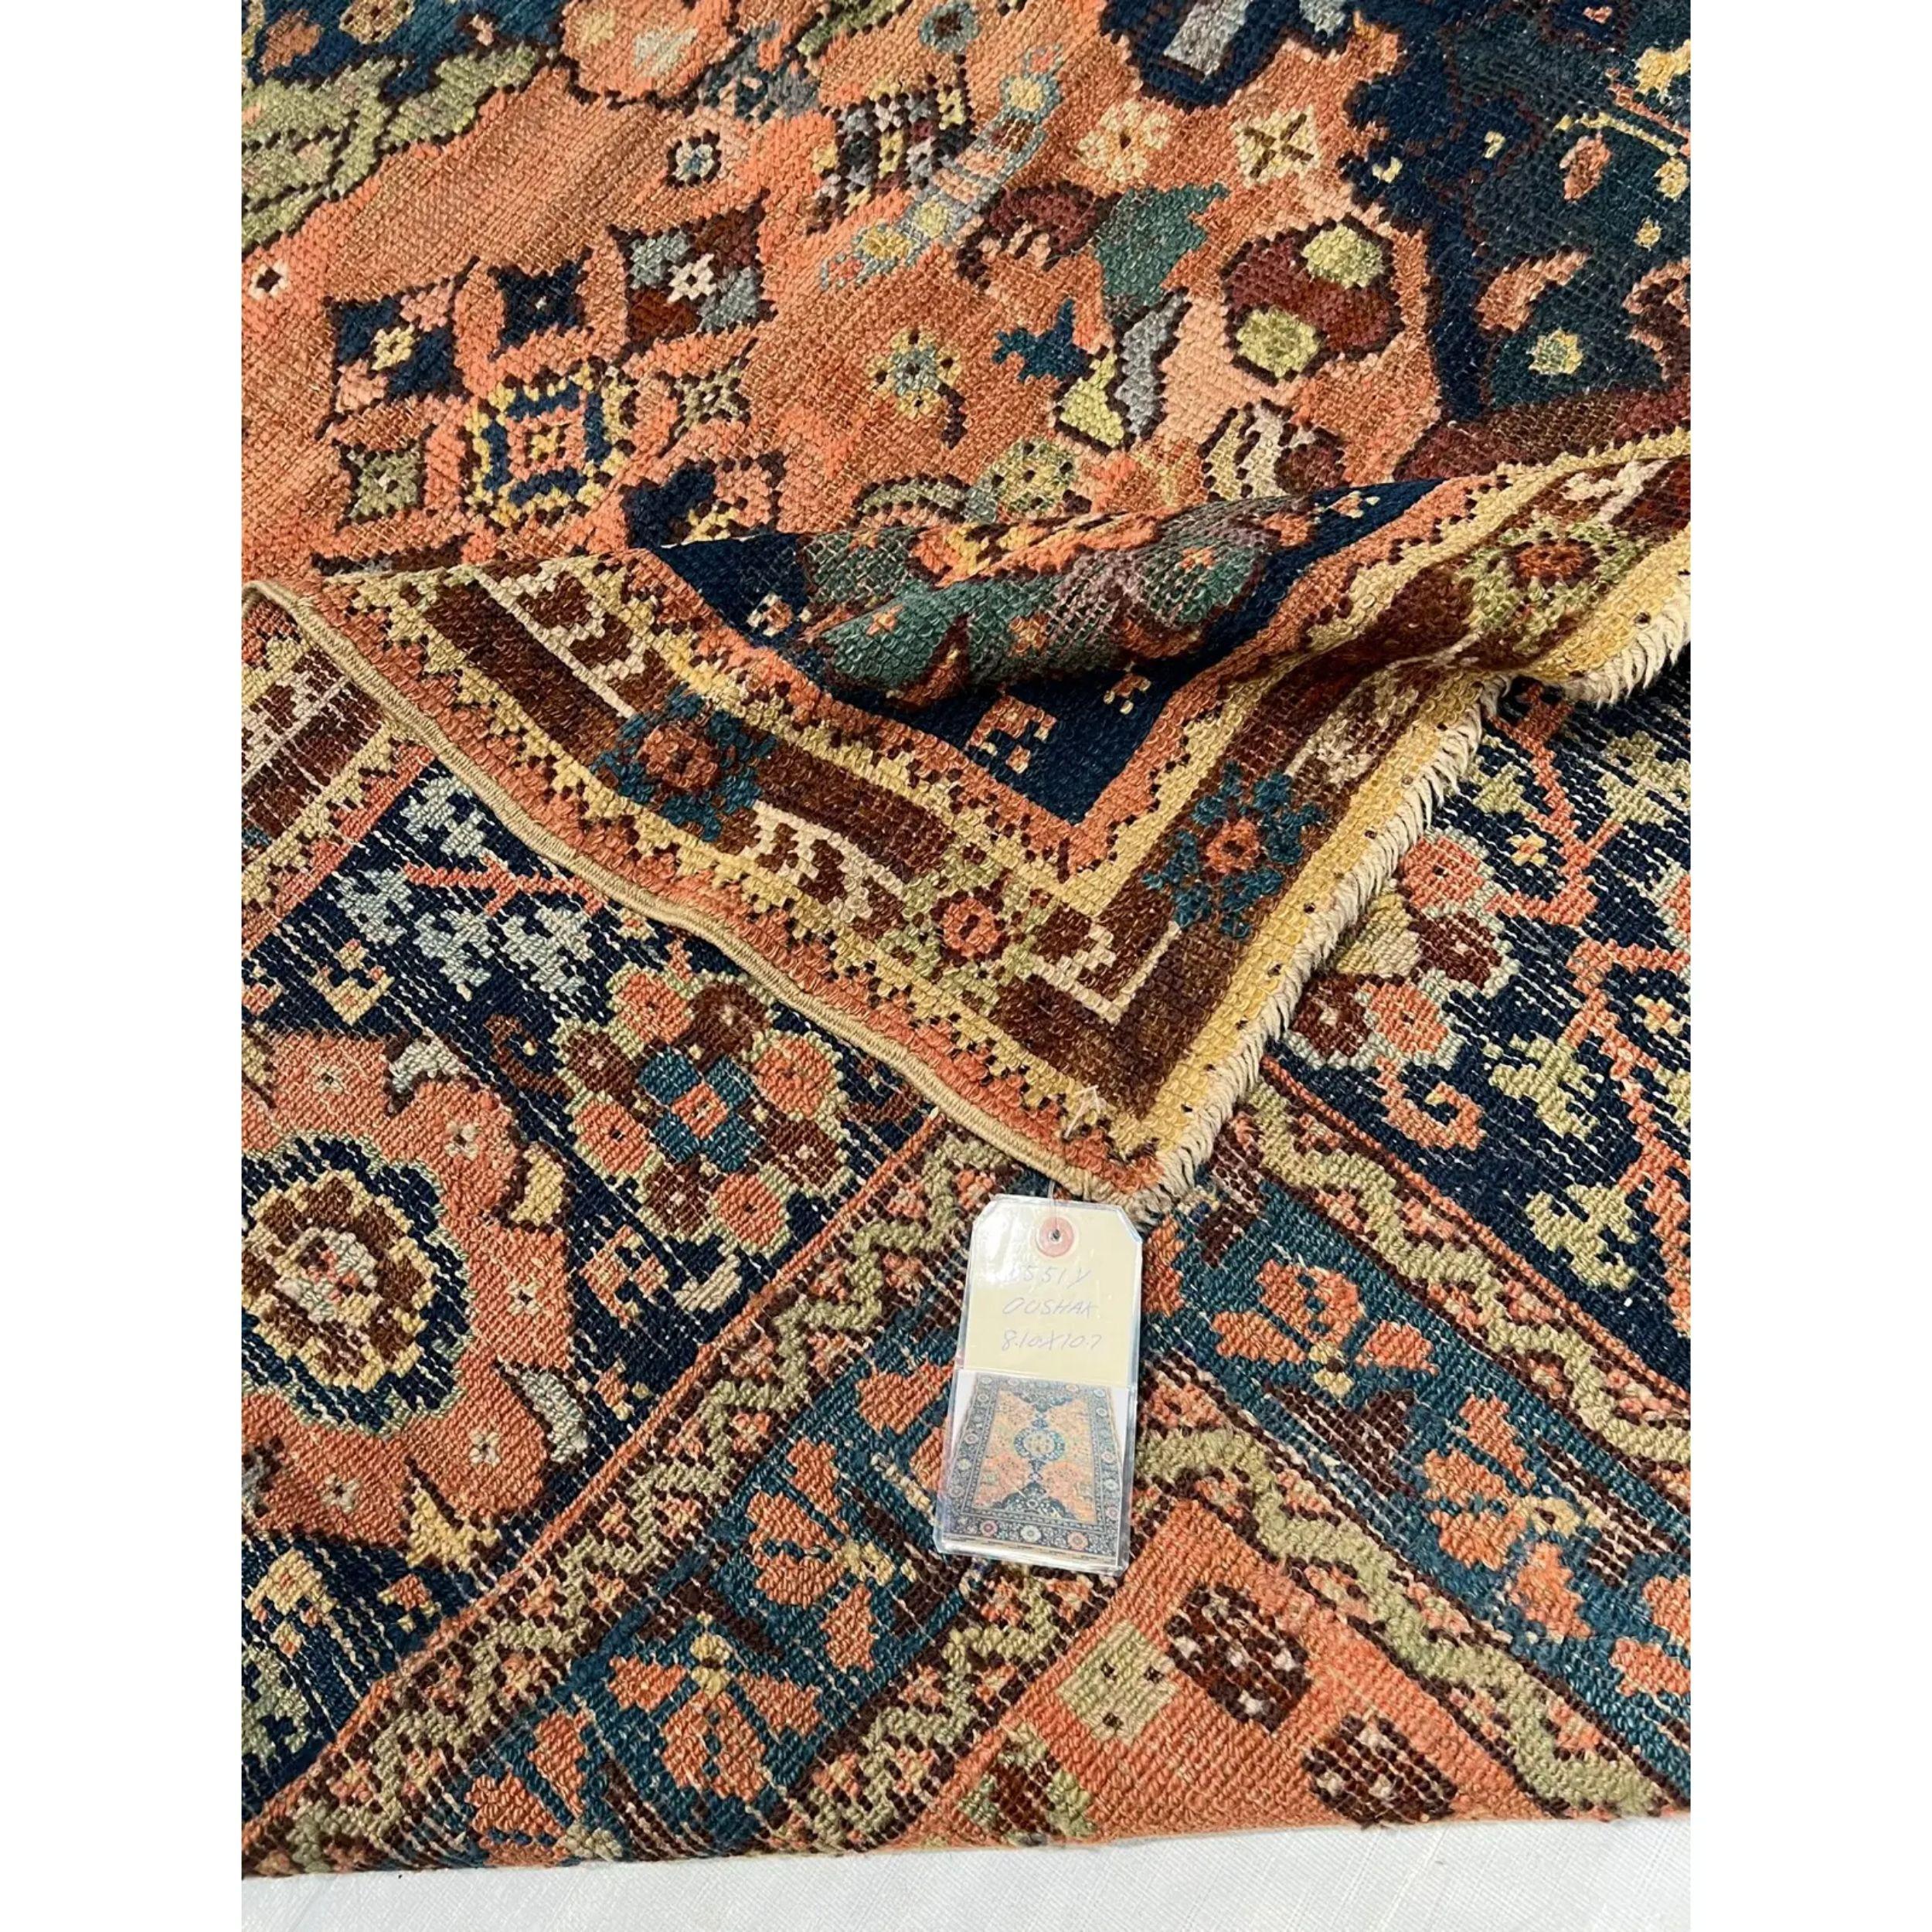 Une vaste collection de tapis turcs anciens
Les tapis turcs (également appelés tapis d'Anatolie) sont sans doute les tapis qui ont tout déclenché. Ces tapis font partie de la première vague de tapis anciens orientaux exportés en Europe. Les tapis